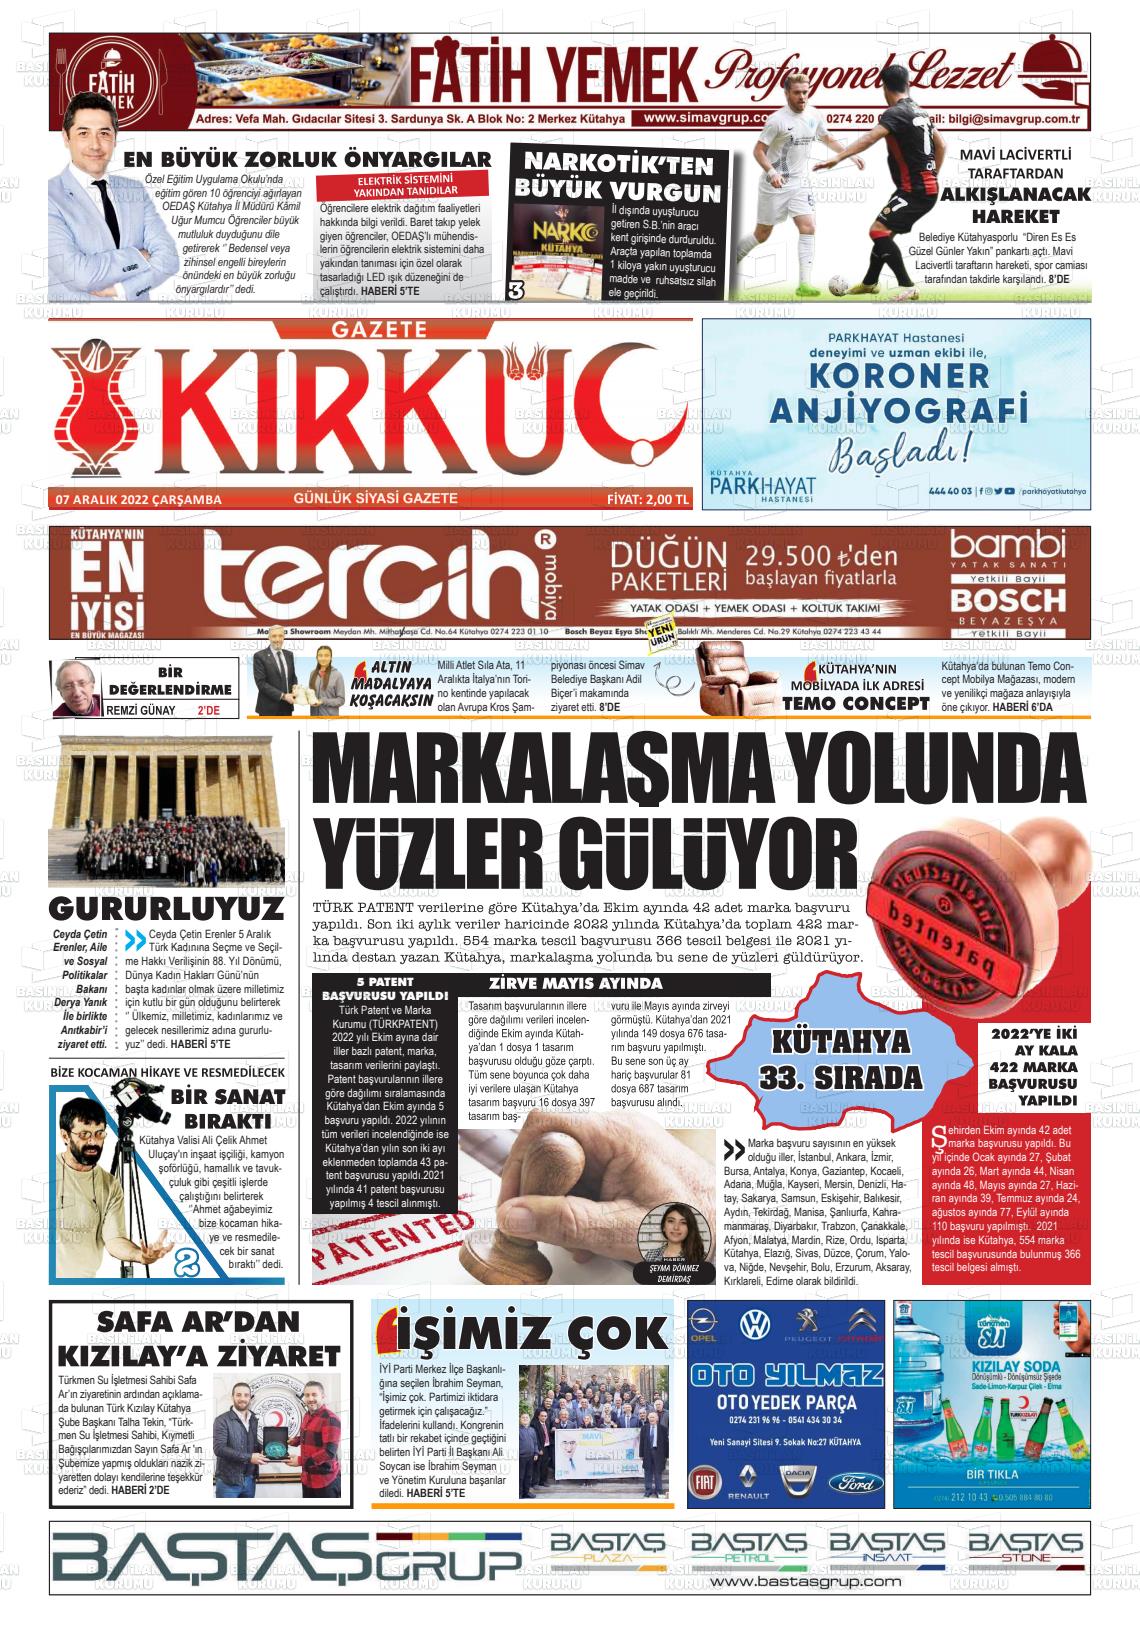 07 Aralık 2022 Gazete Kırküç Gazete Manşeti